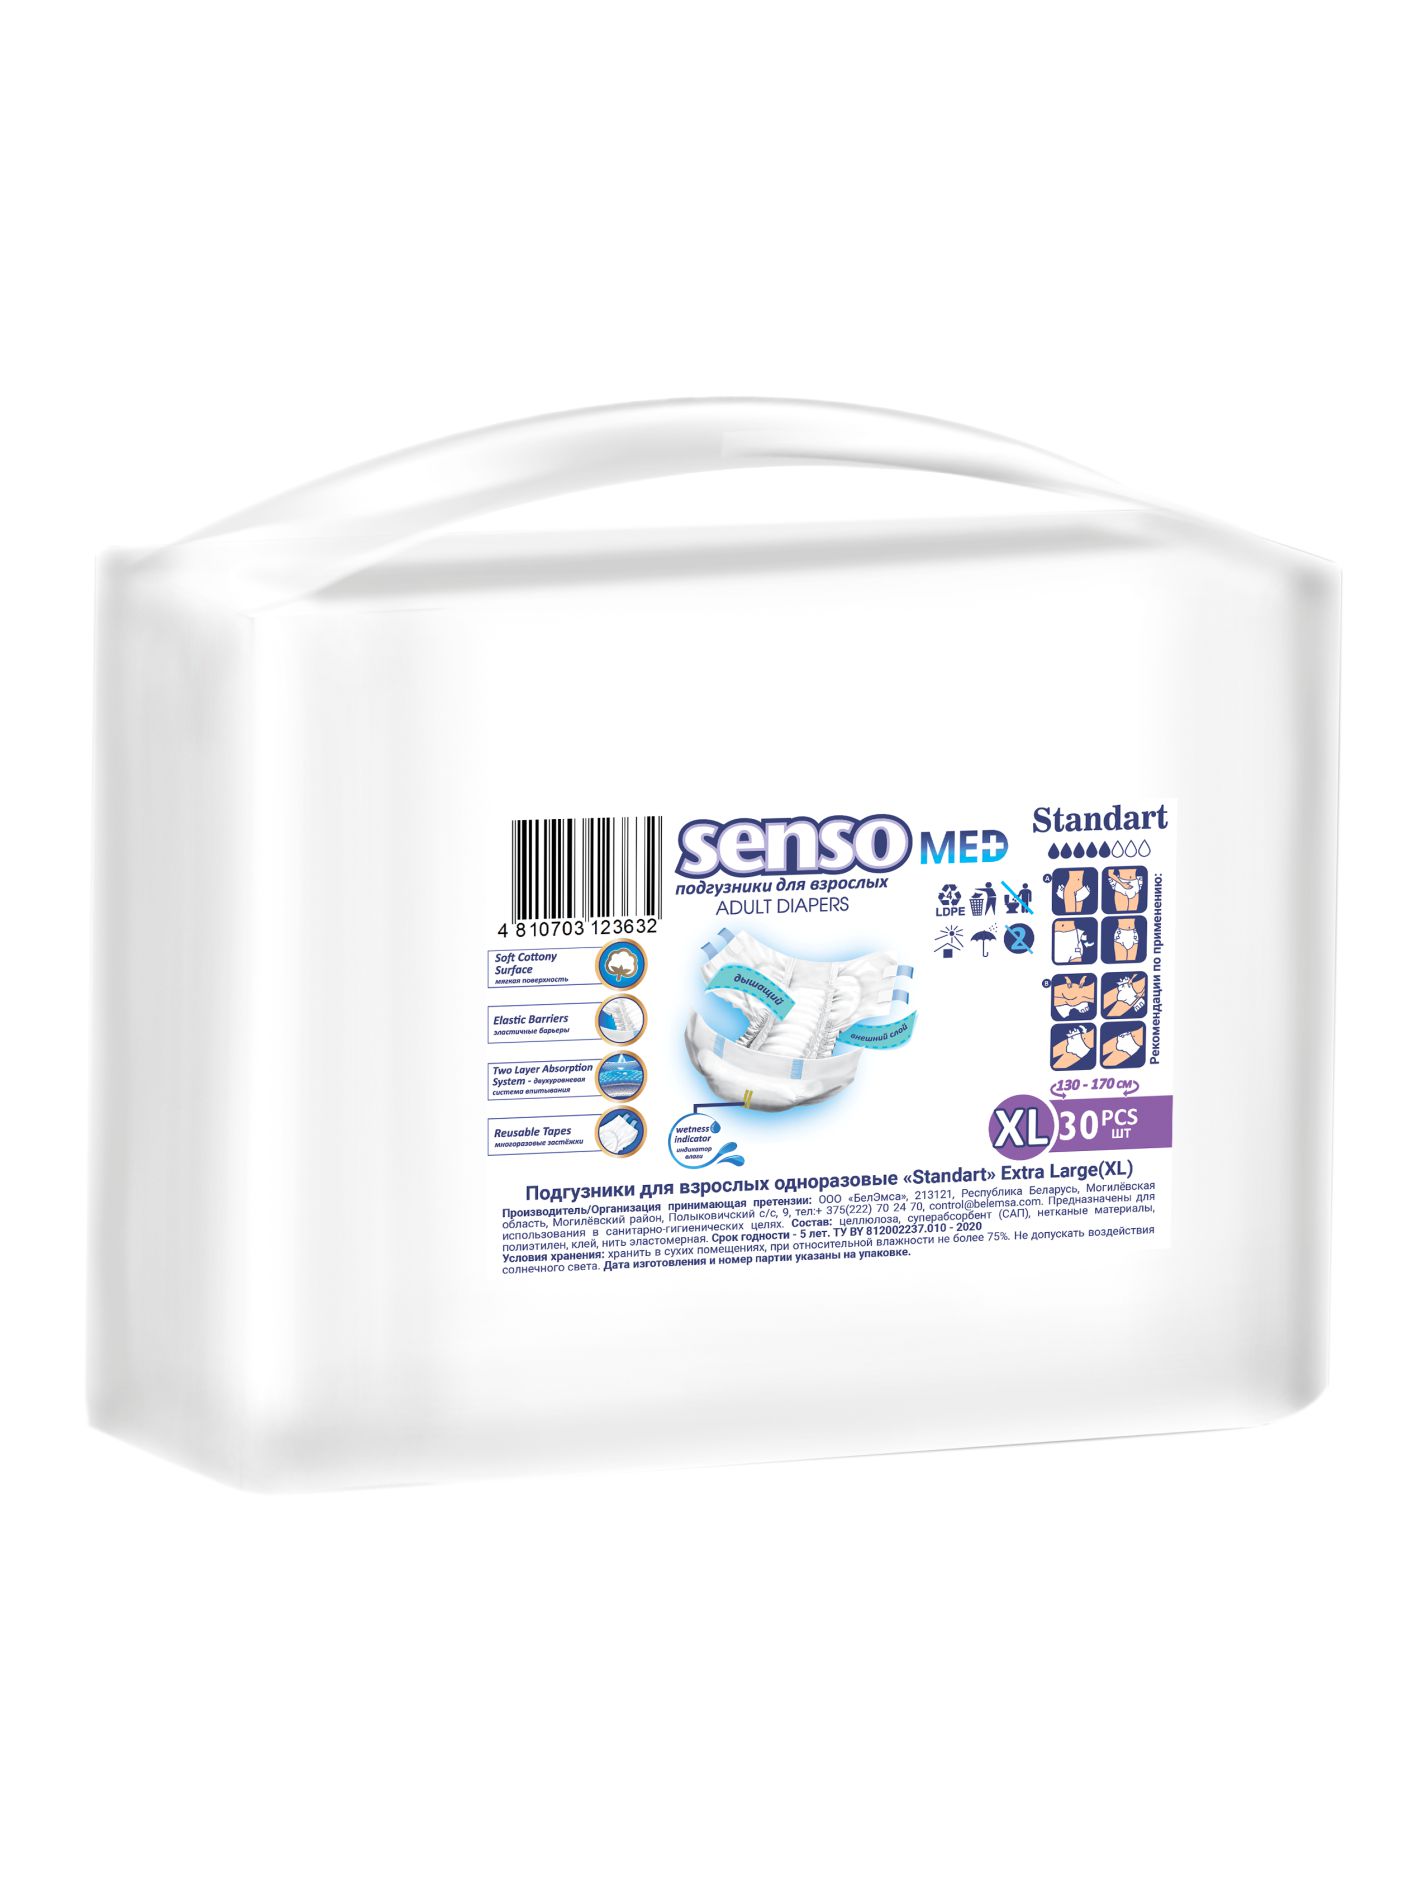 Подгузники для взрослых Senso Med Standart р.XL (130-170) 30 шт.  - купить со скидкой